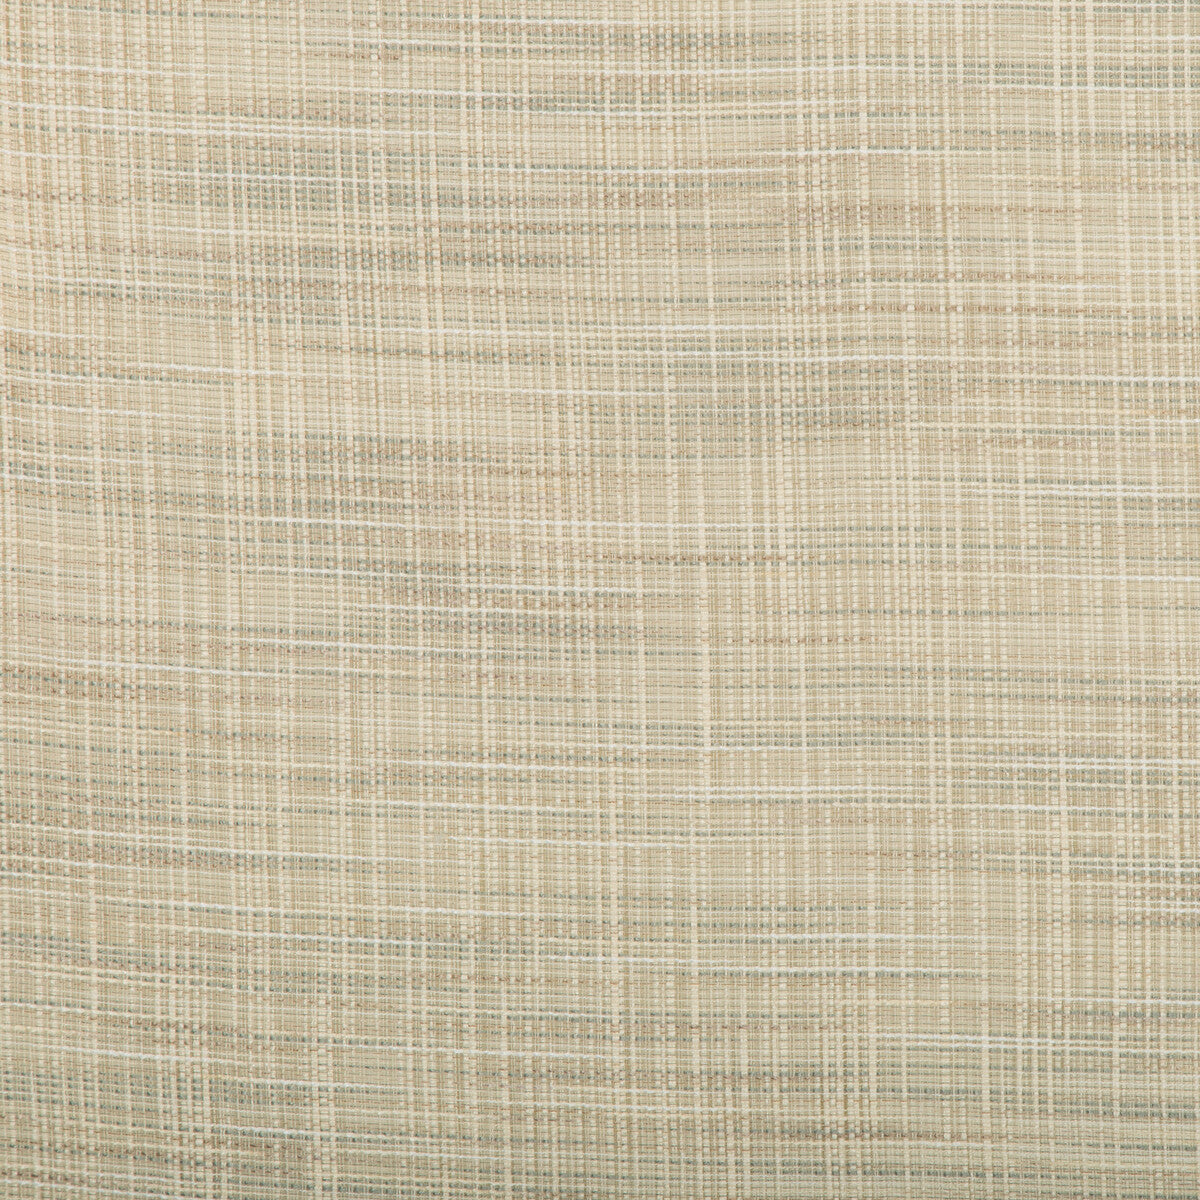 Kravet Basics fabric in 4666-135 color - pattern 4666.135.0 - by Kravet Basics